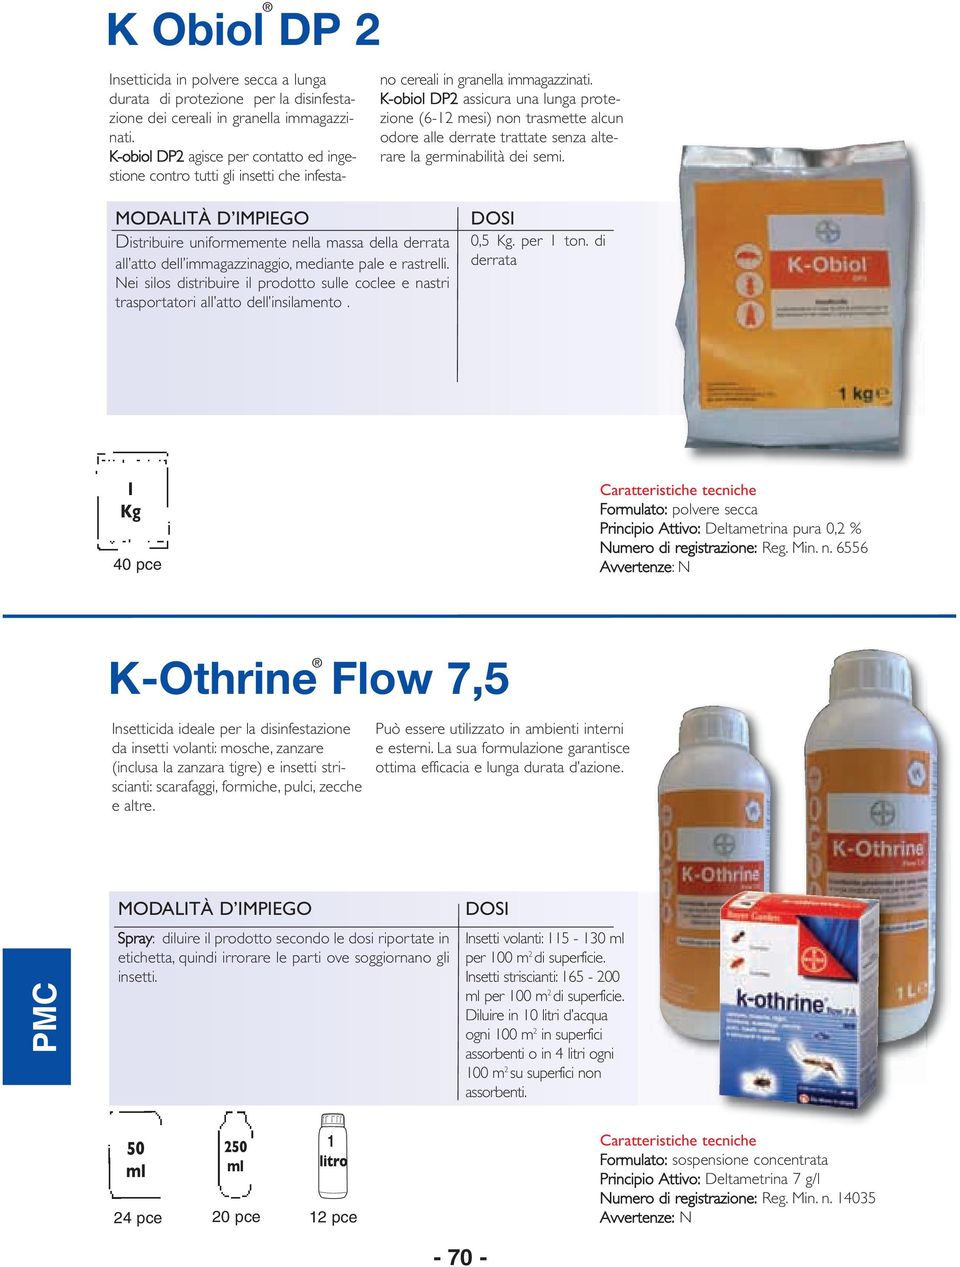 K-obiol DP2 assicura una lunga protezione (6-2 mesi) non trasmette alcun odore alle derrate trattate senza alterare la germinabilità dei semi.